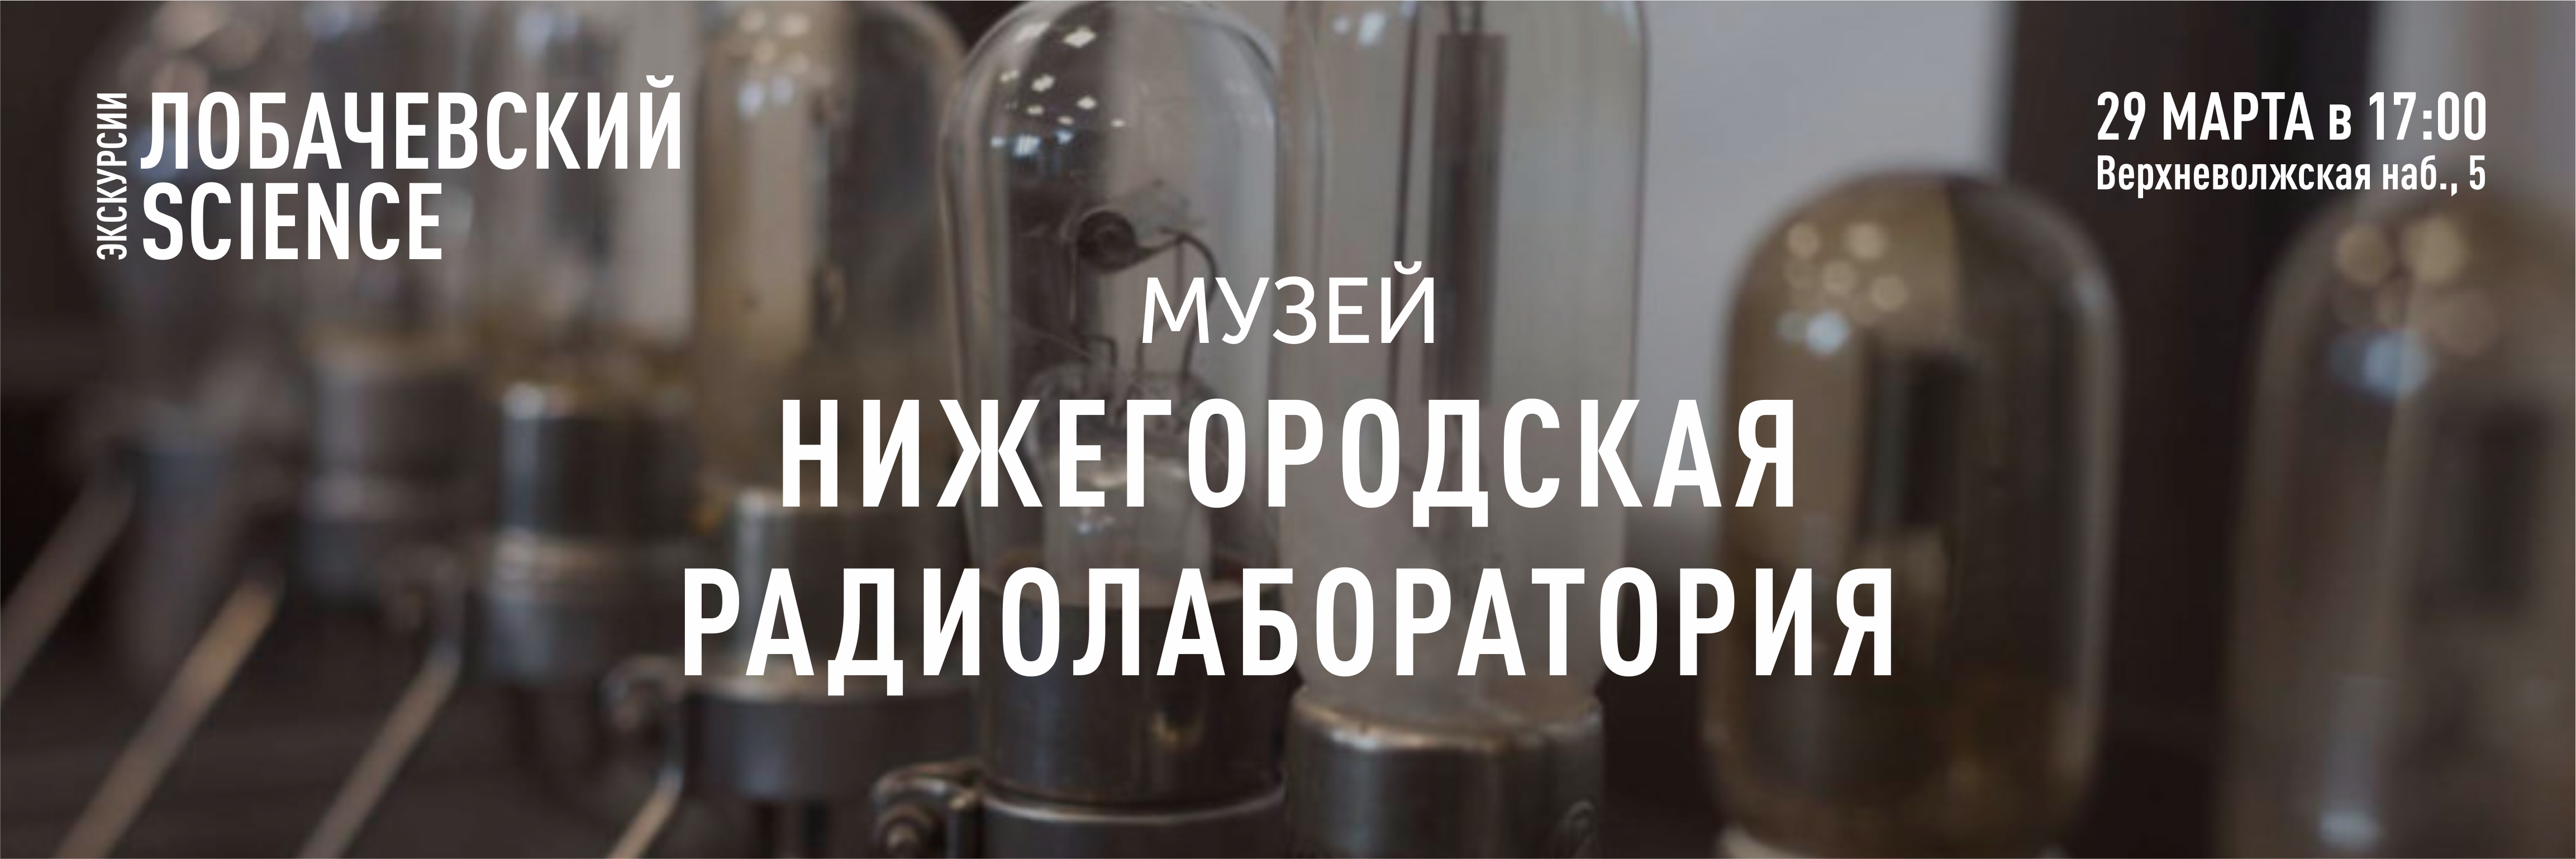 Подробнее о статье Экскурсия в Музей «Нижегородская радиолаборатория»